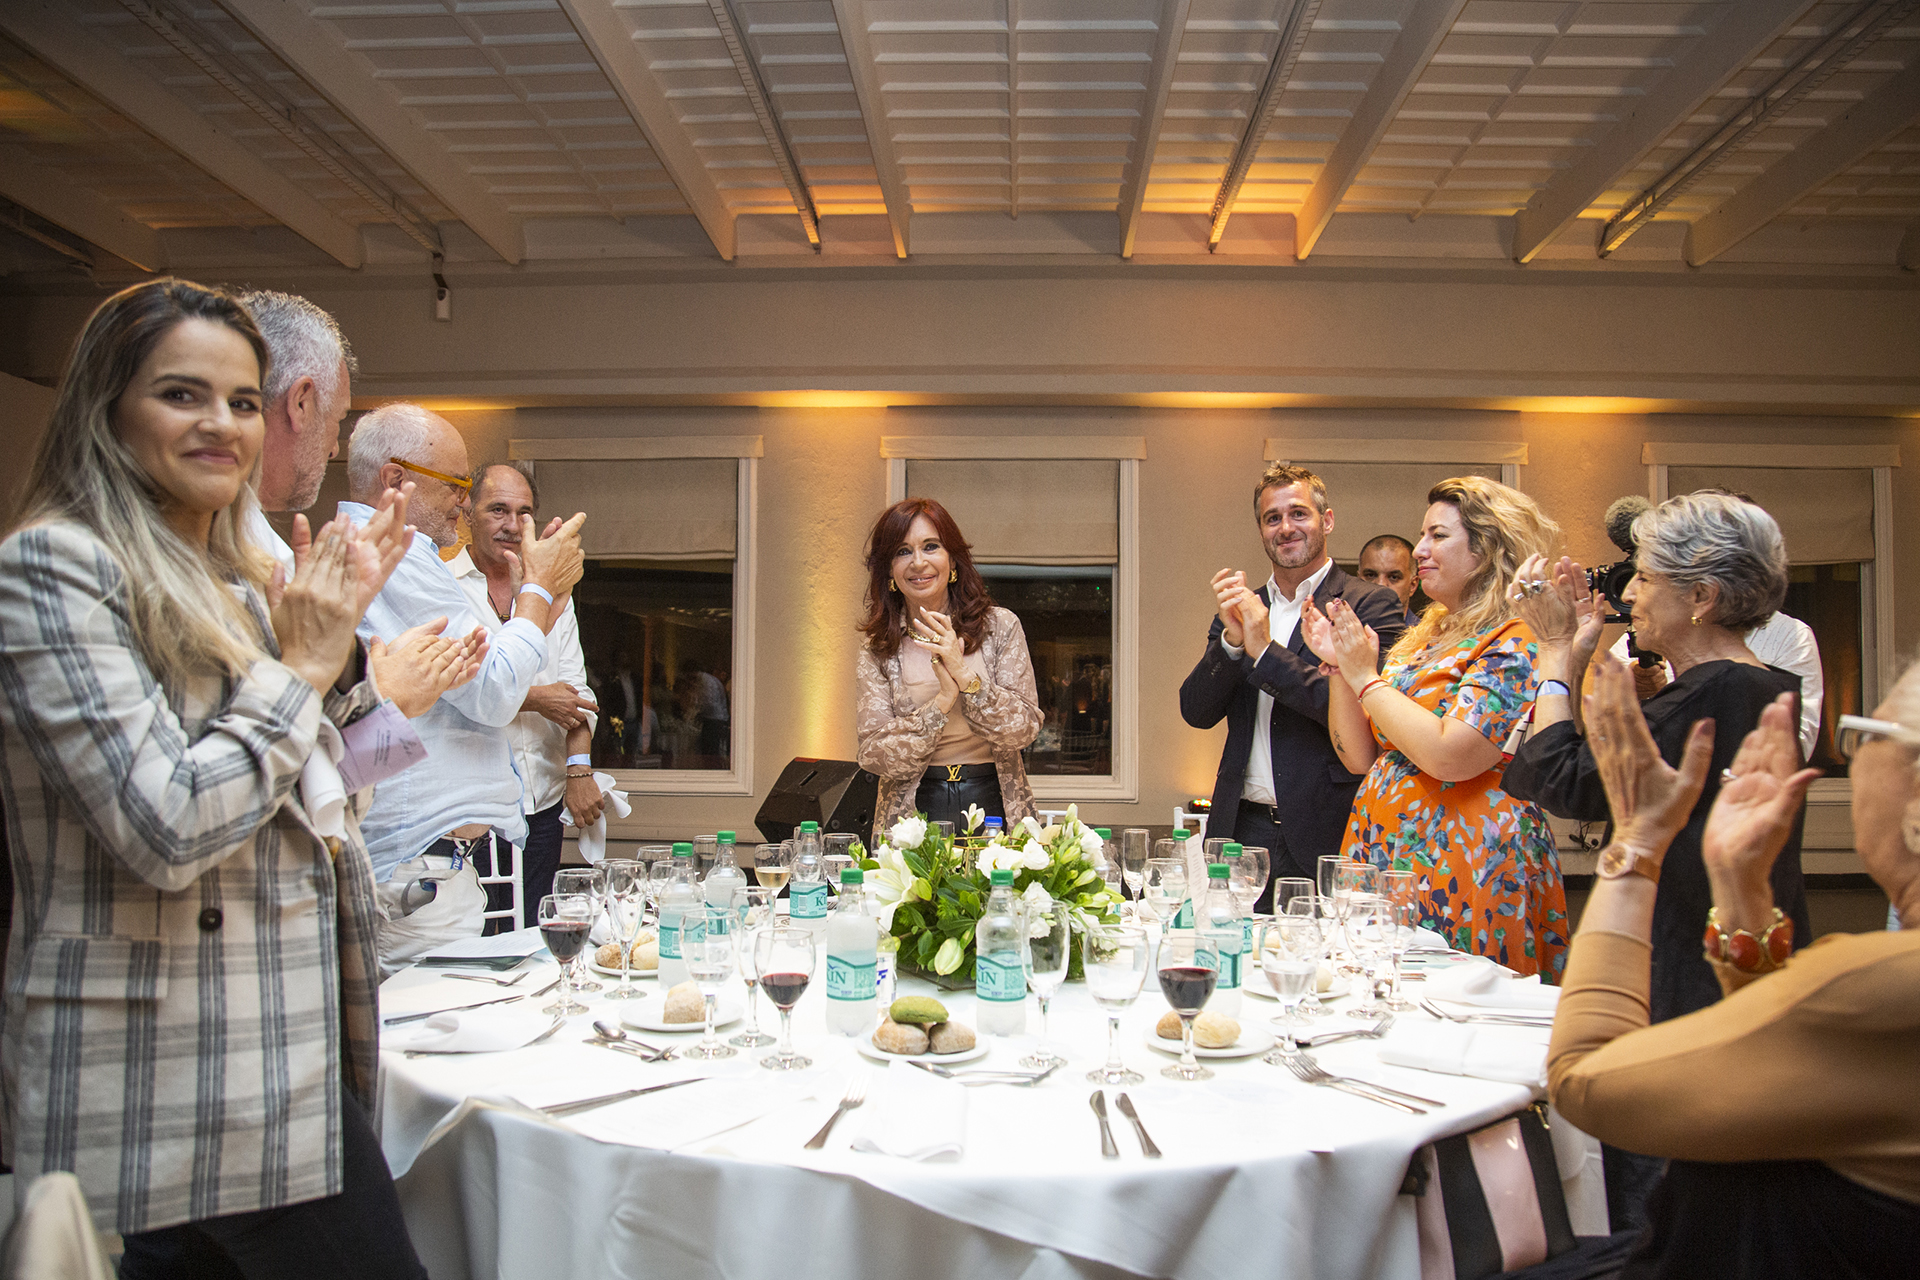 En la mesa principal, estuvieron además de Cristina Kirchner y el intendente Achával, Juan Leyrado, Cristina Banegas, Susana Rinaldi, Dady Brieva y su esposa, Mariela Anchipi.